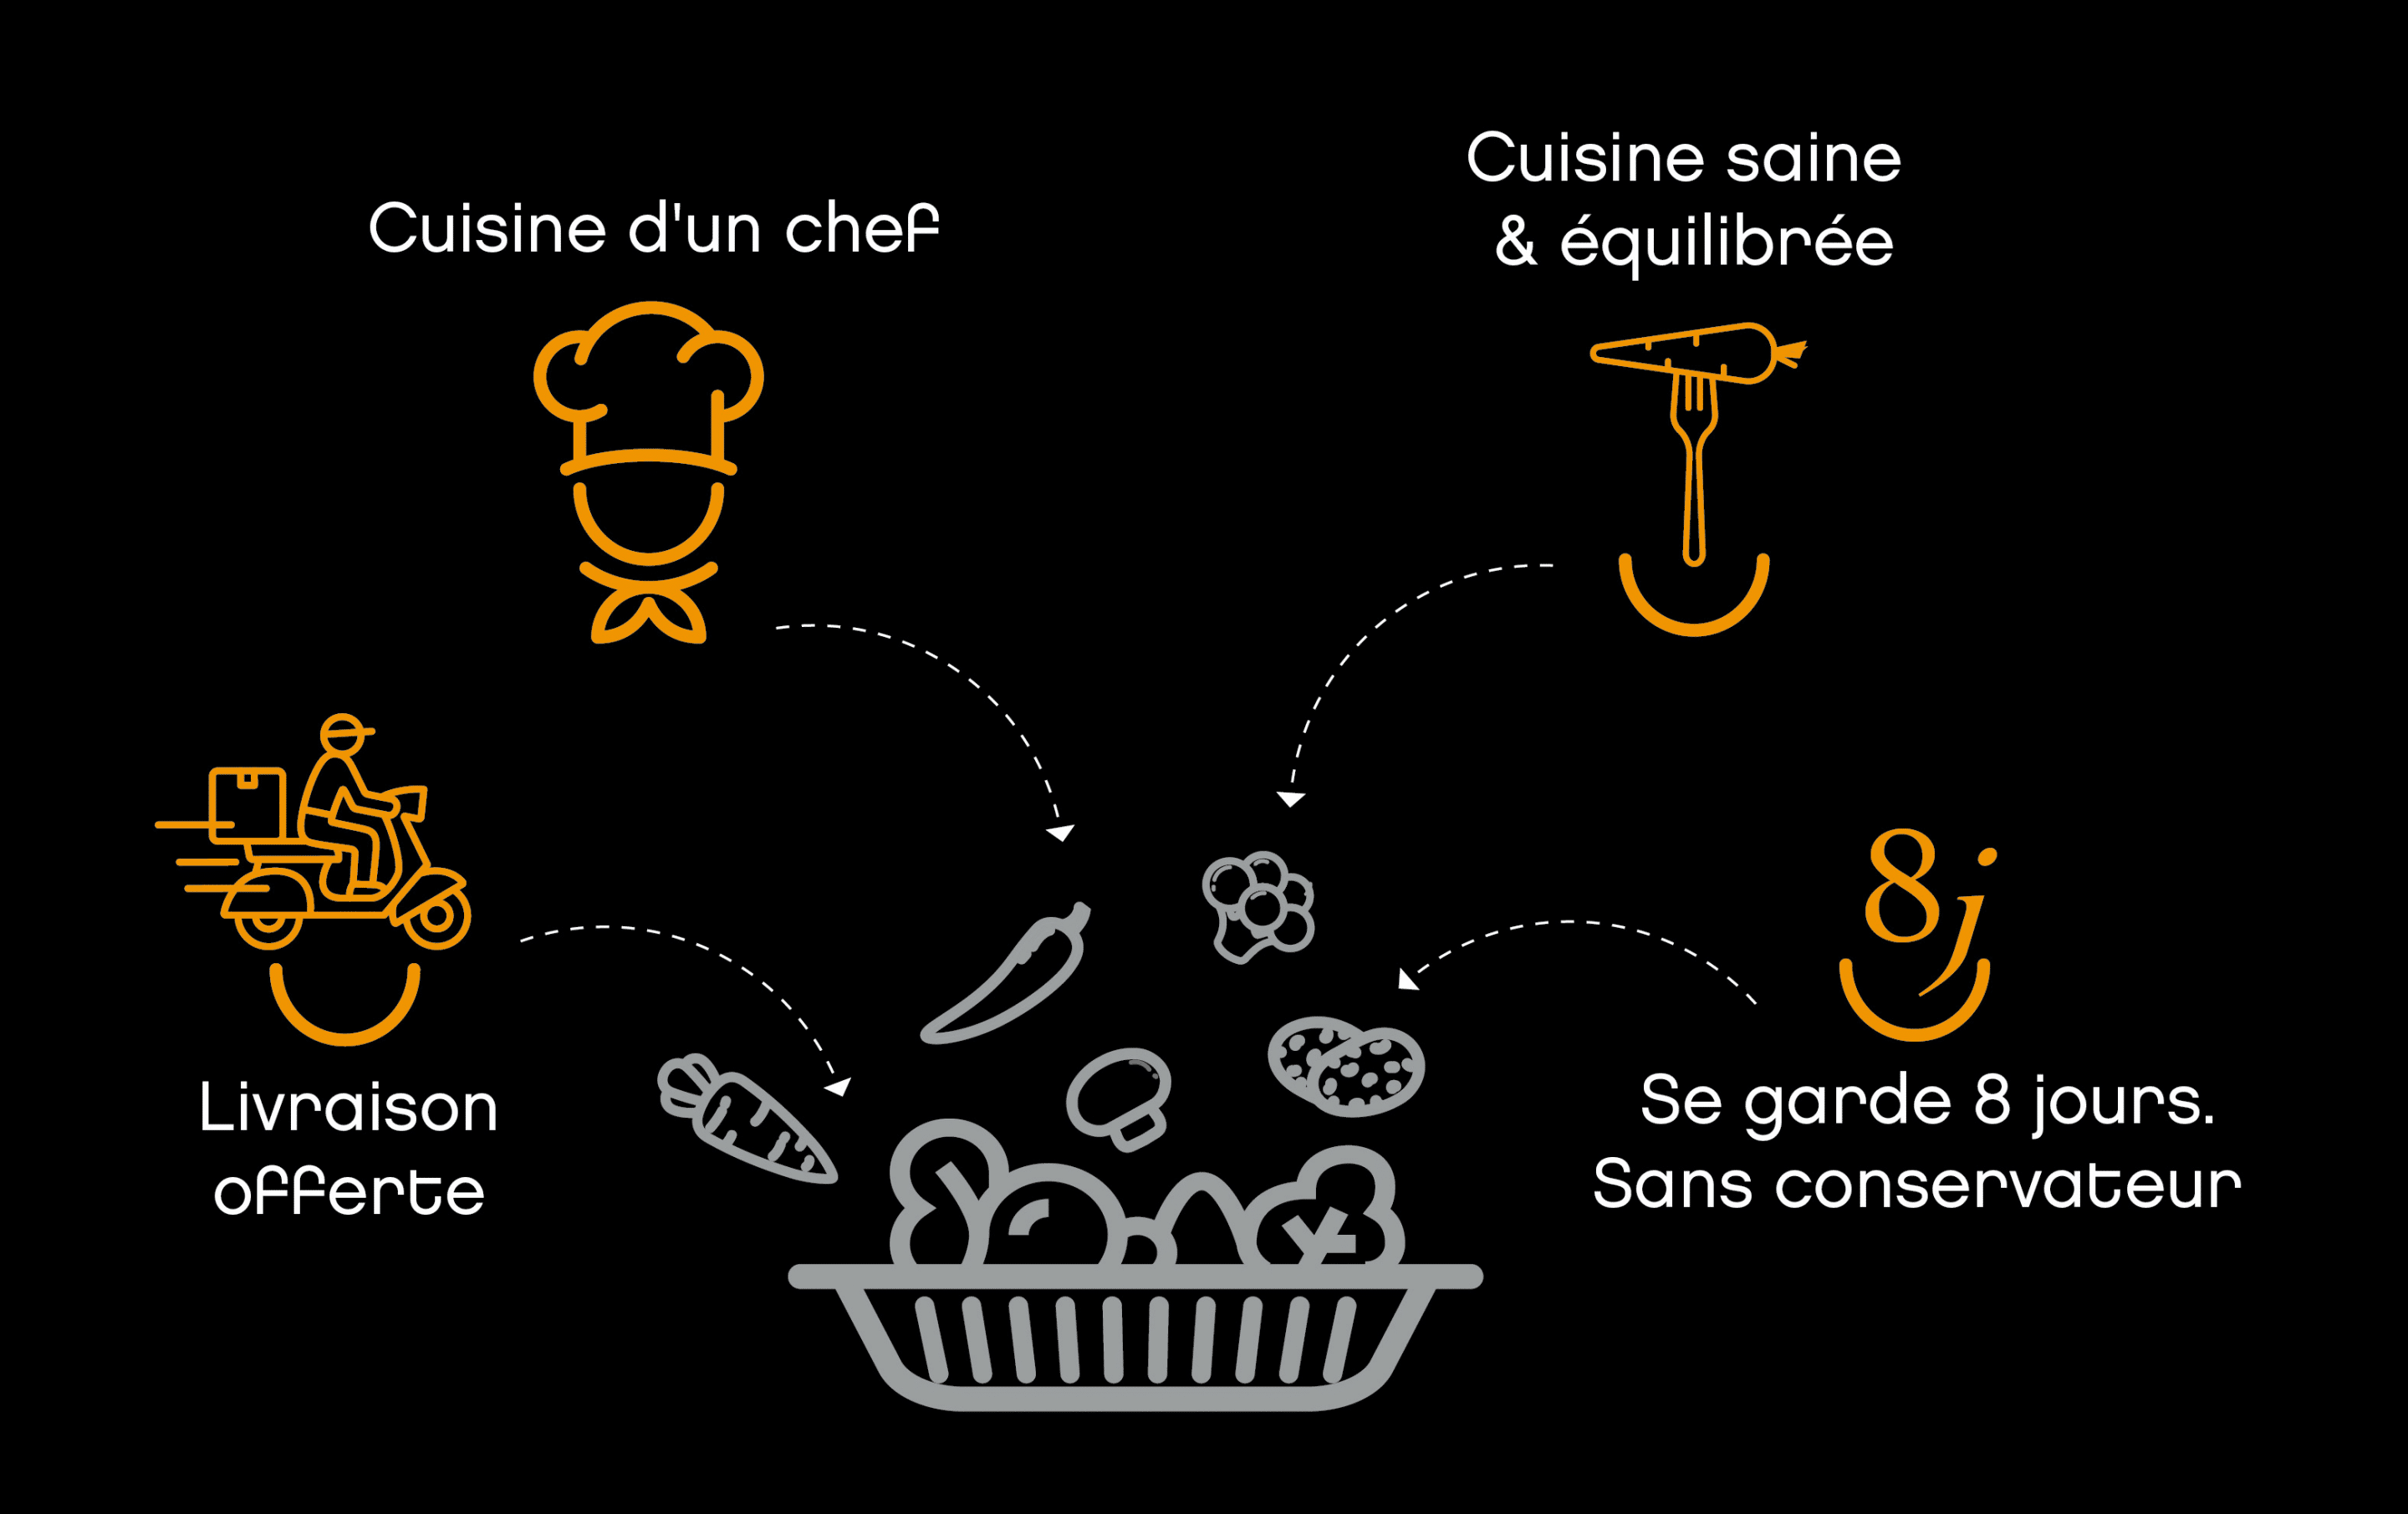 Bertin gourmet - Livraison de plats cuisinés sous vide sains et équilibrés